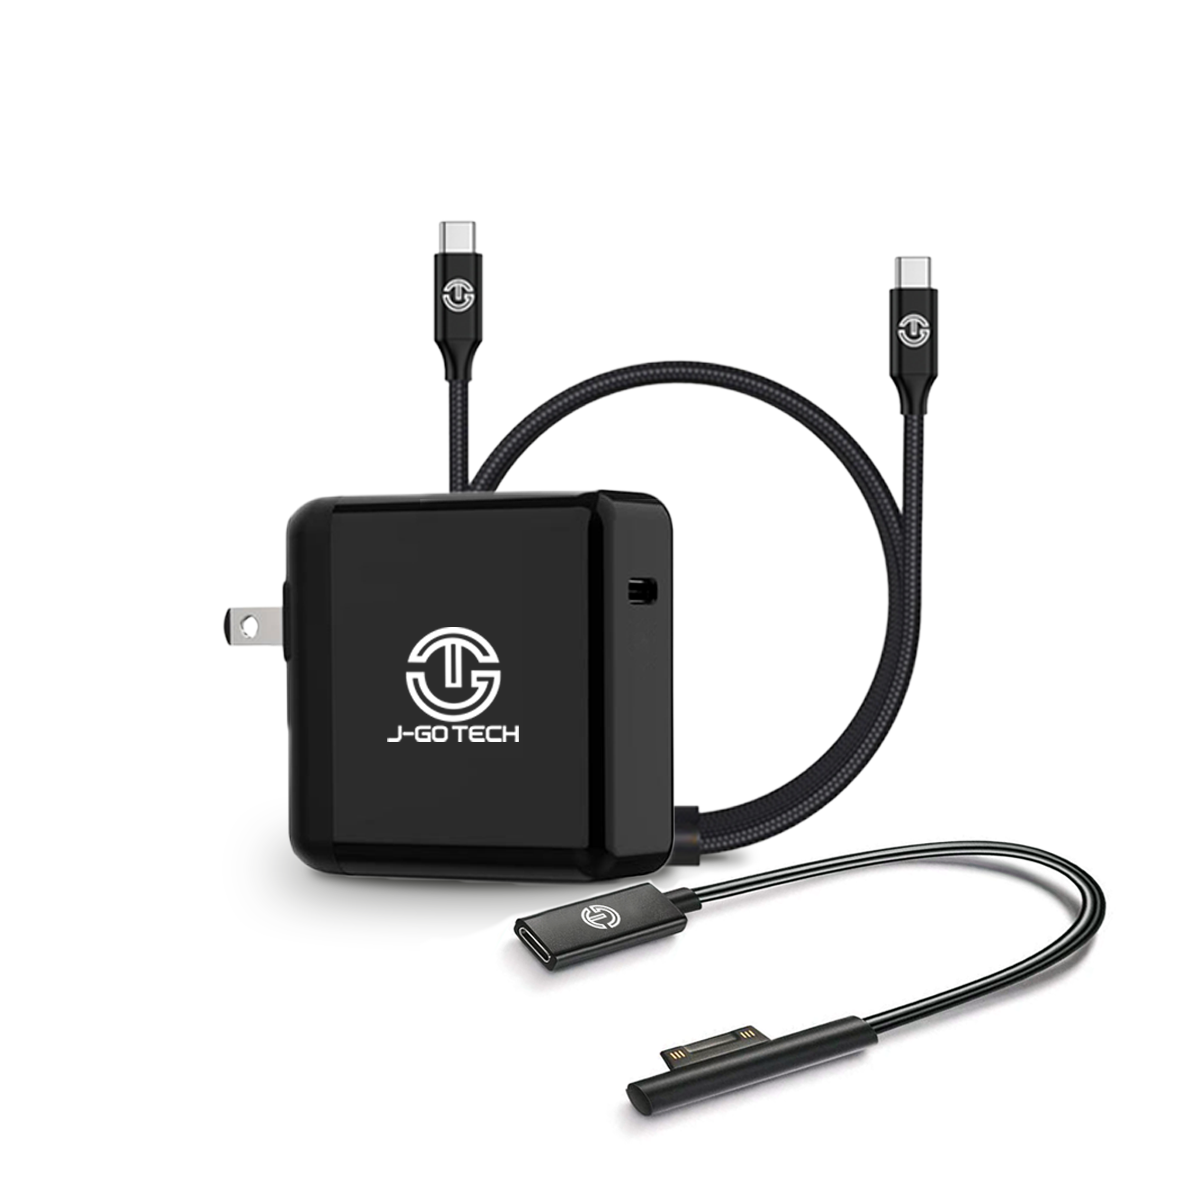 Câble GEEK MONKEY USB-A 2.1 compatible 3 en 1 - Micro USB/iPhone Lightning  et USB-C - Charge rapide - 2 mètre - Noir